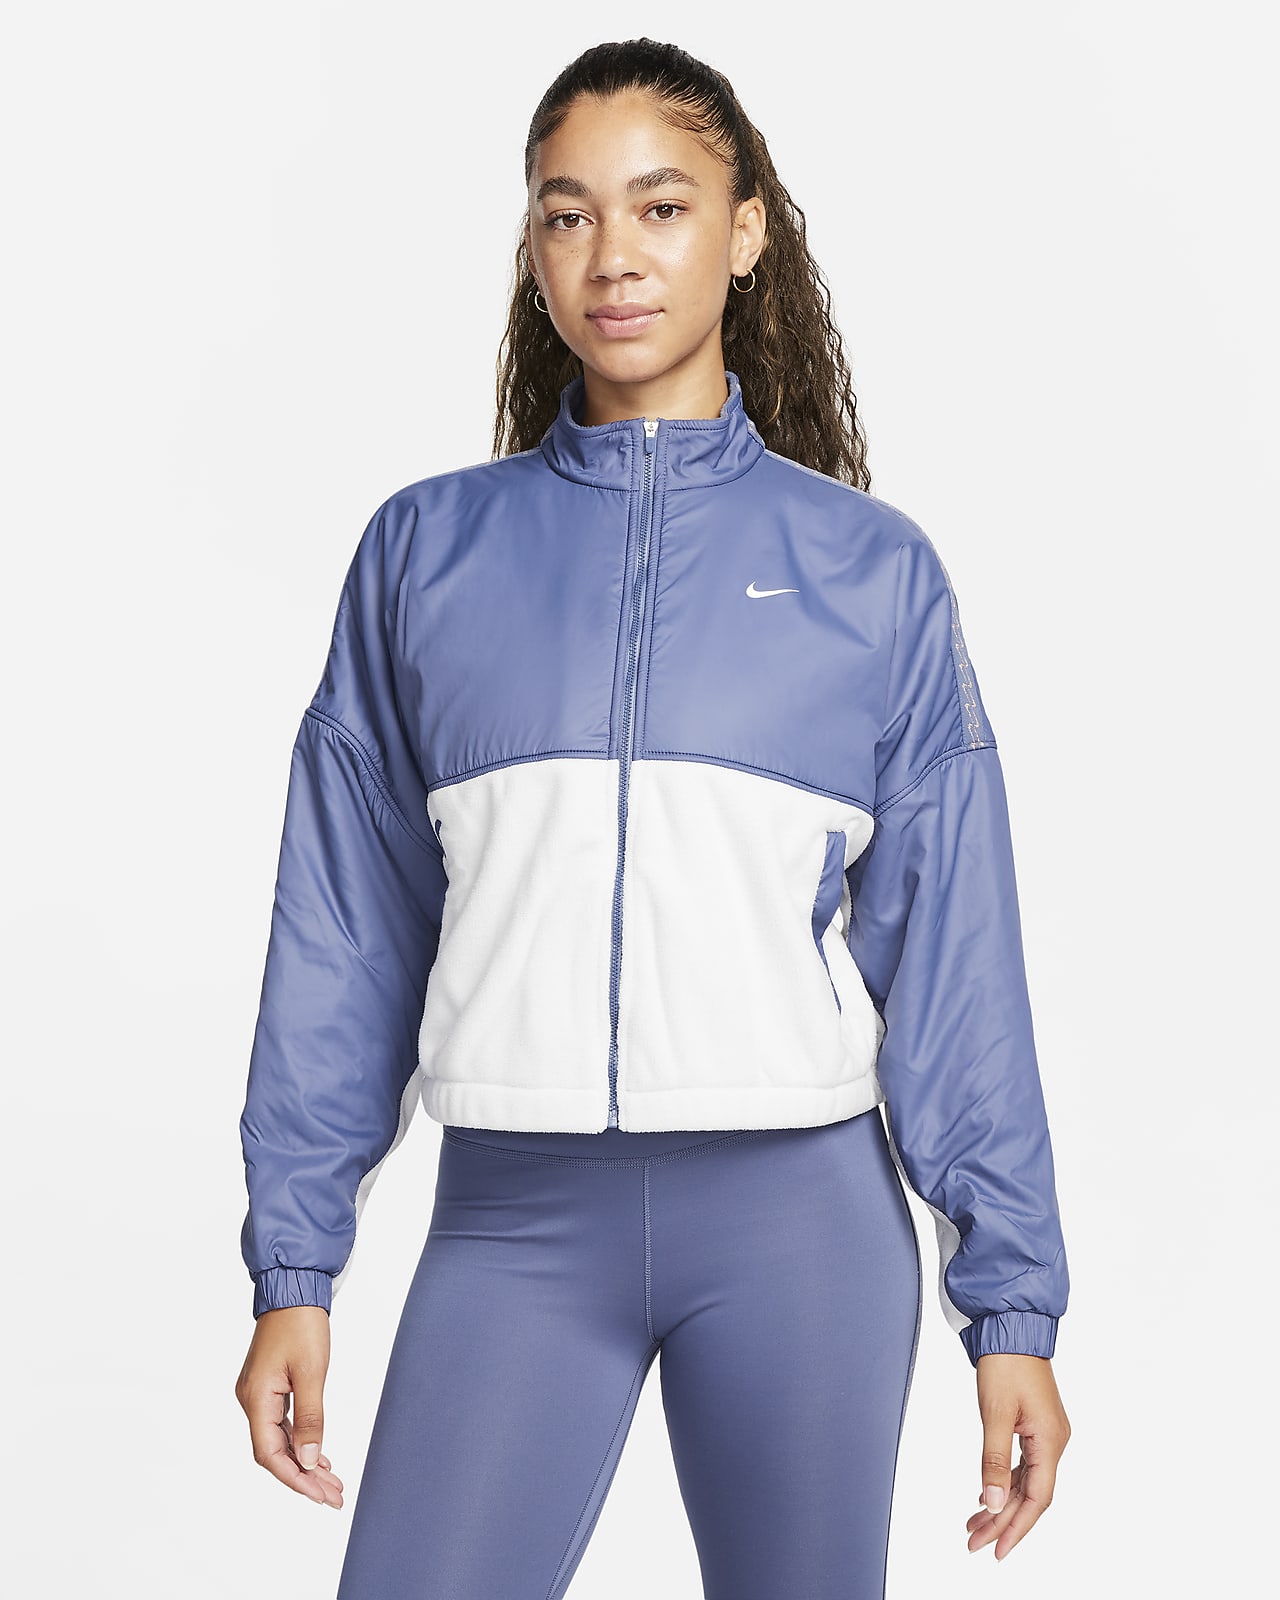 Dámská flísová bunda Nike Therma-FIT One se zipem po celé délce